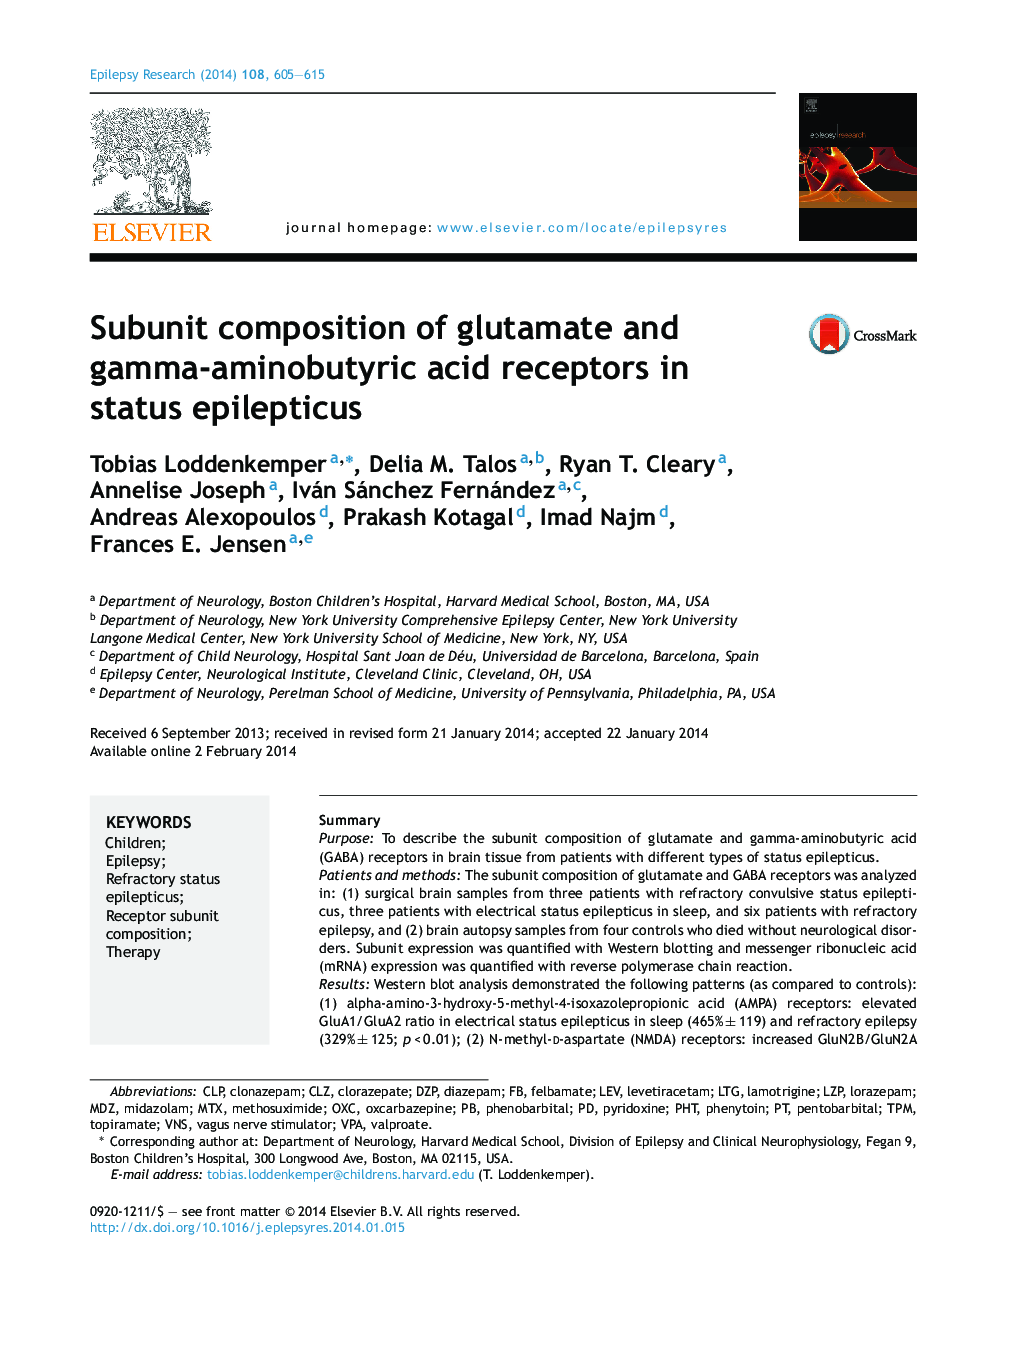 ترکیب زیرمجموعه گلوتامات و گیرنده اسید گاما آمینو بوتیریک در اپیلتکوس وضعیت 